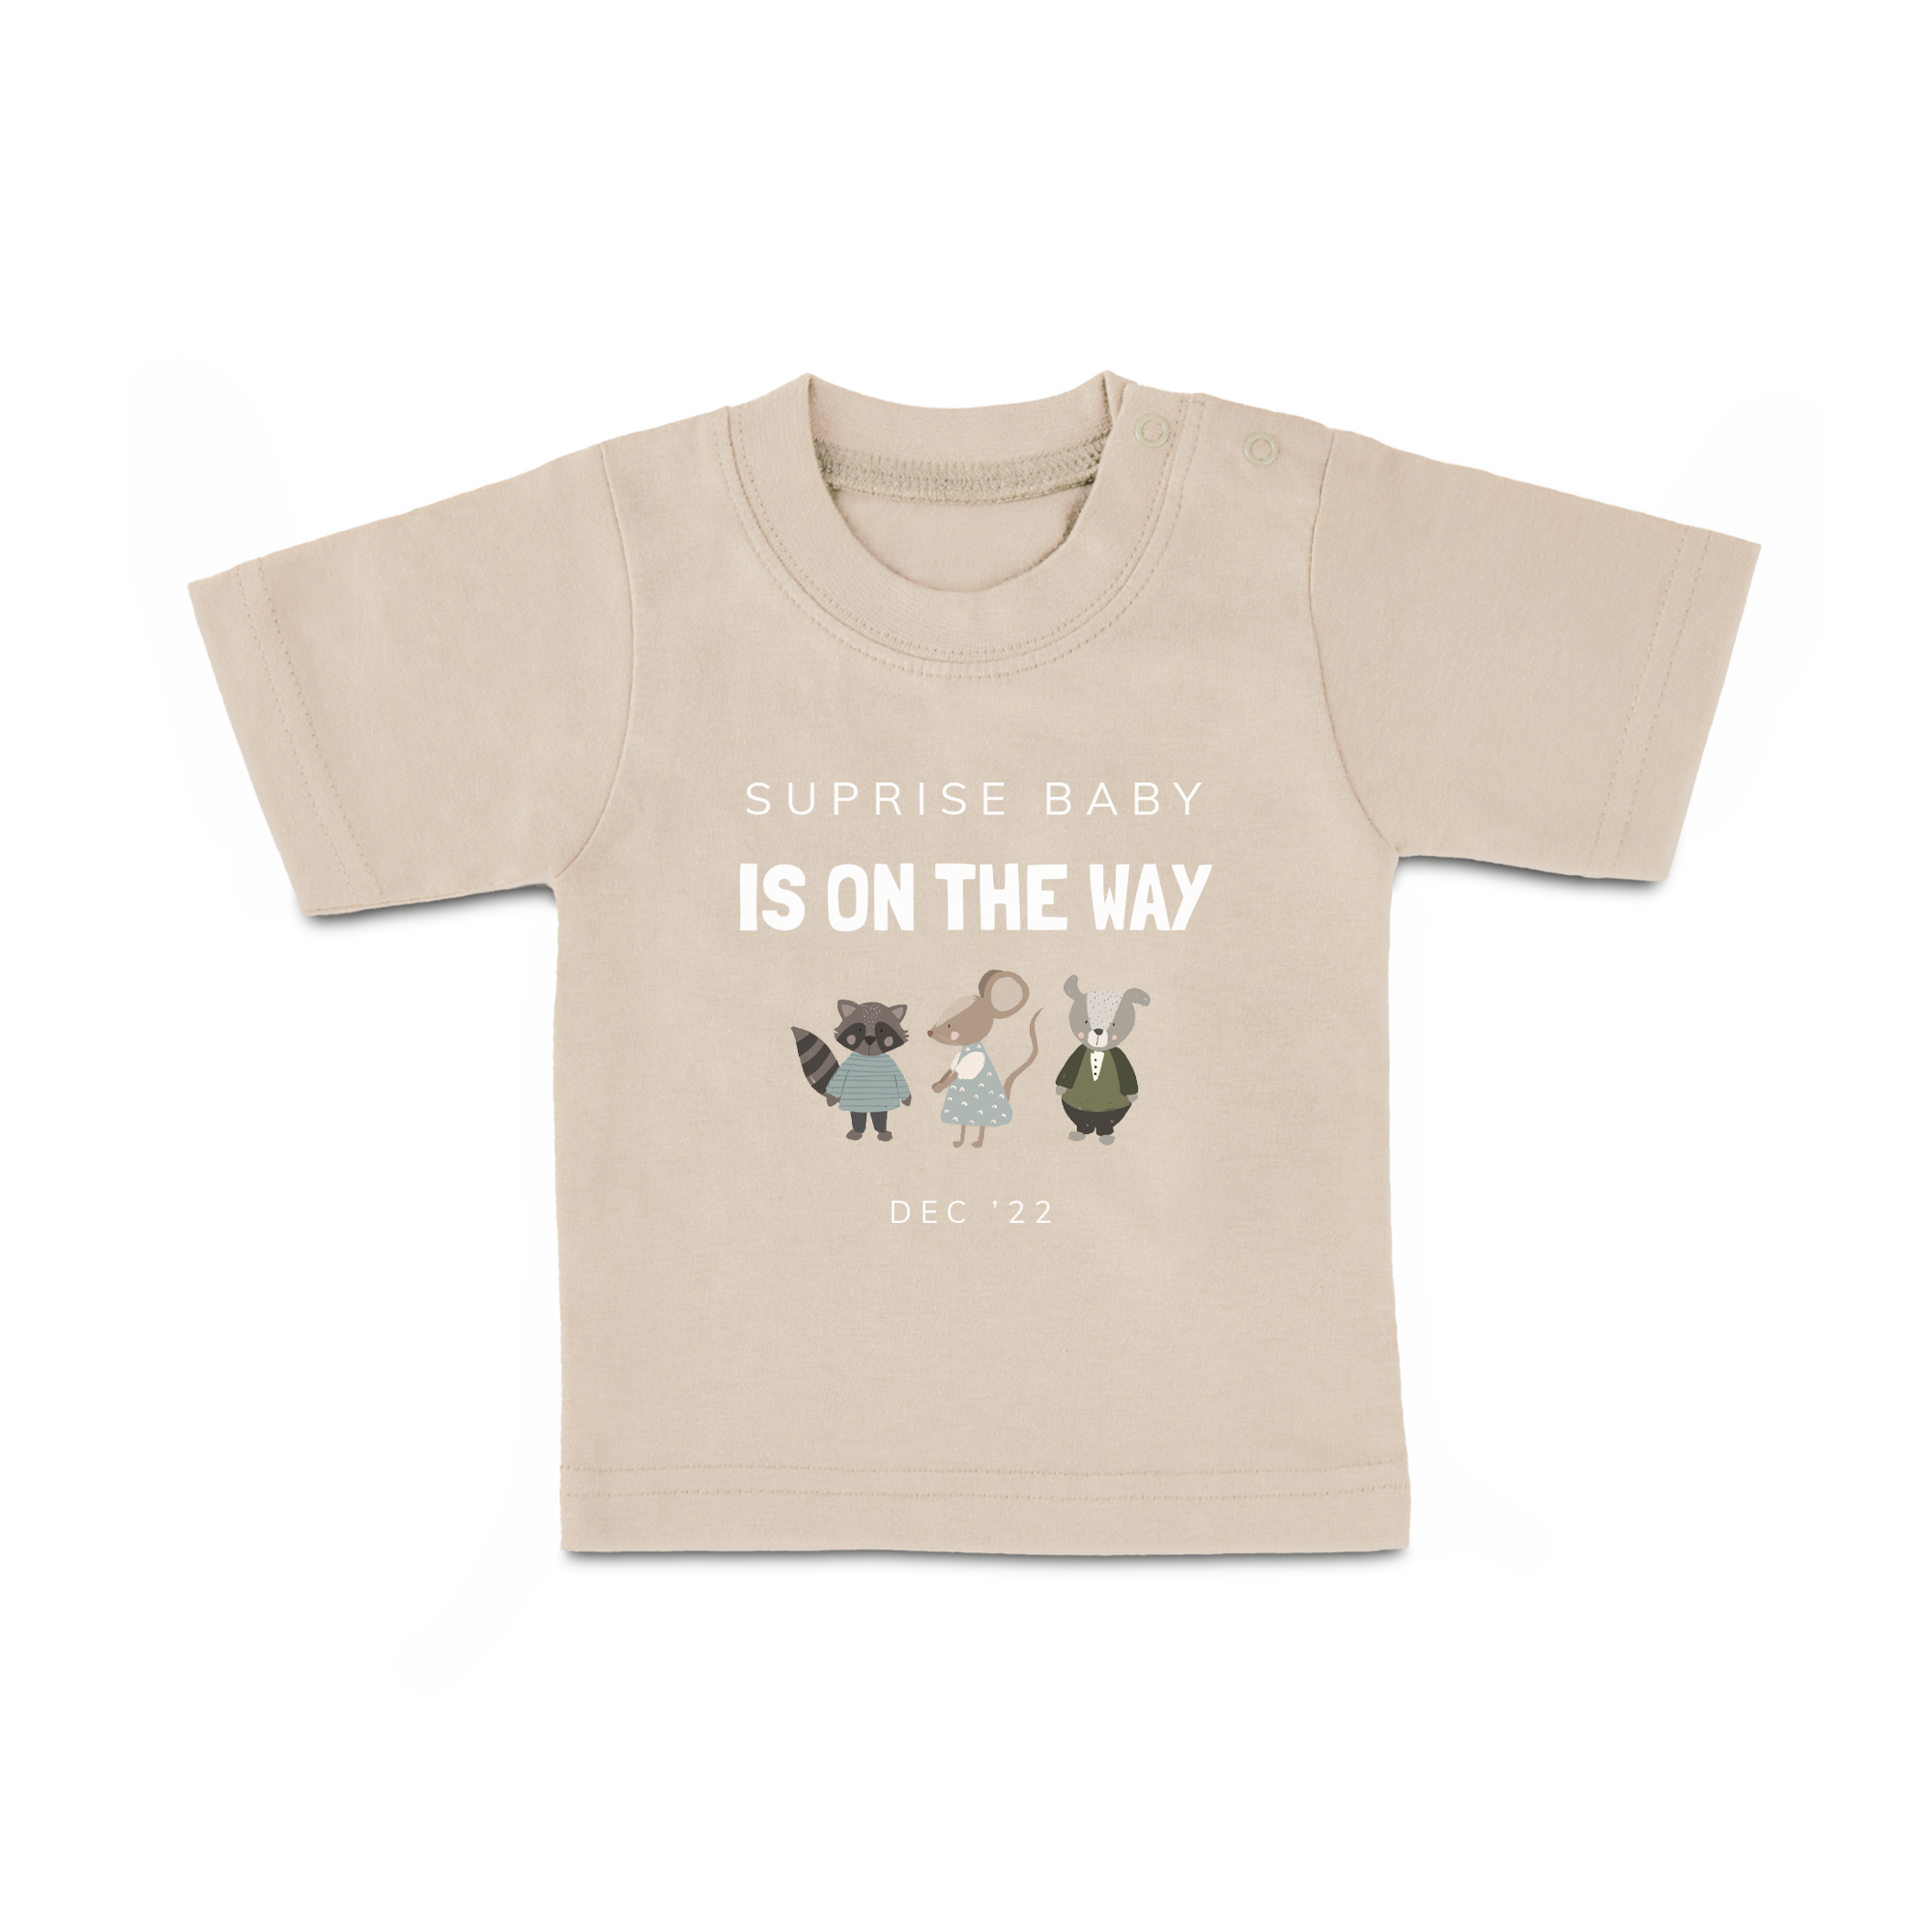 Baby T-Shirt - Printed - Short Sleeves - Beige - 50/56